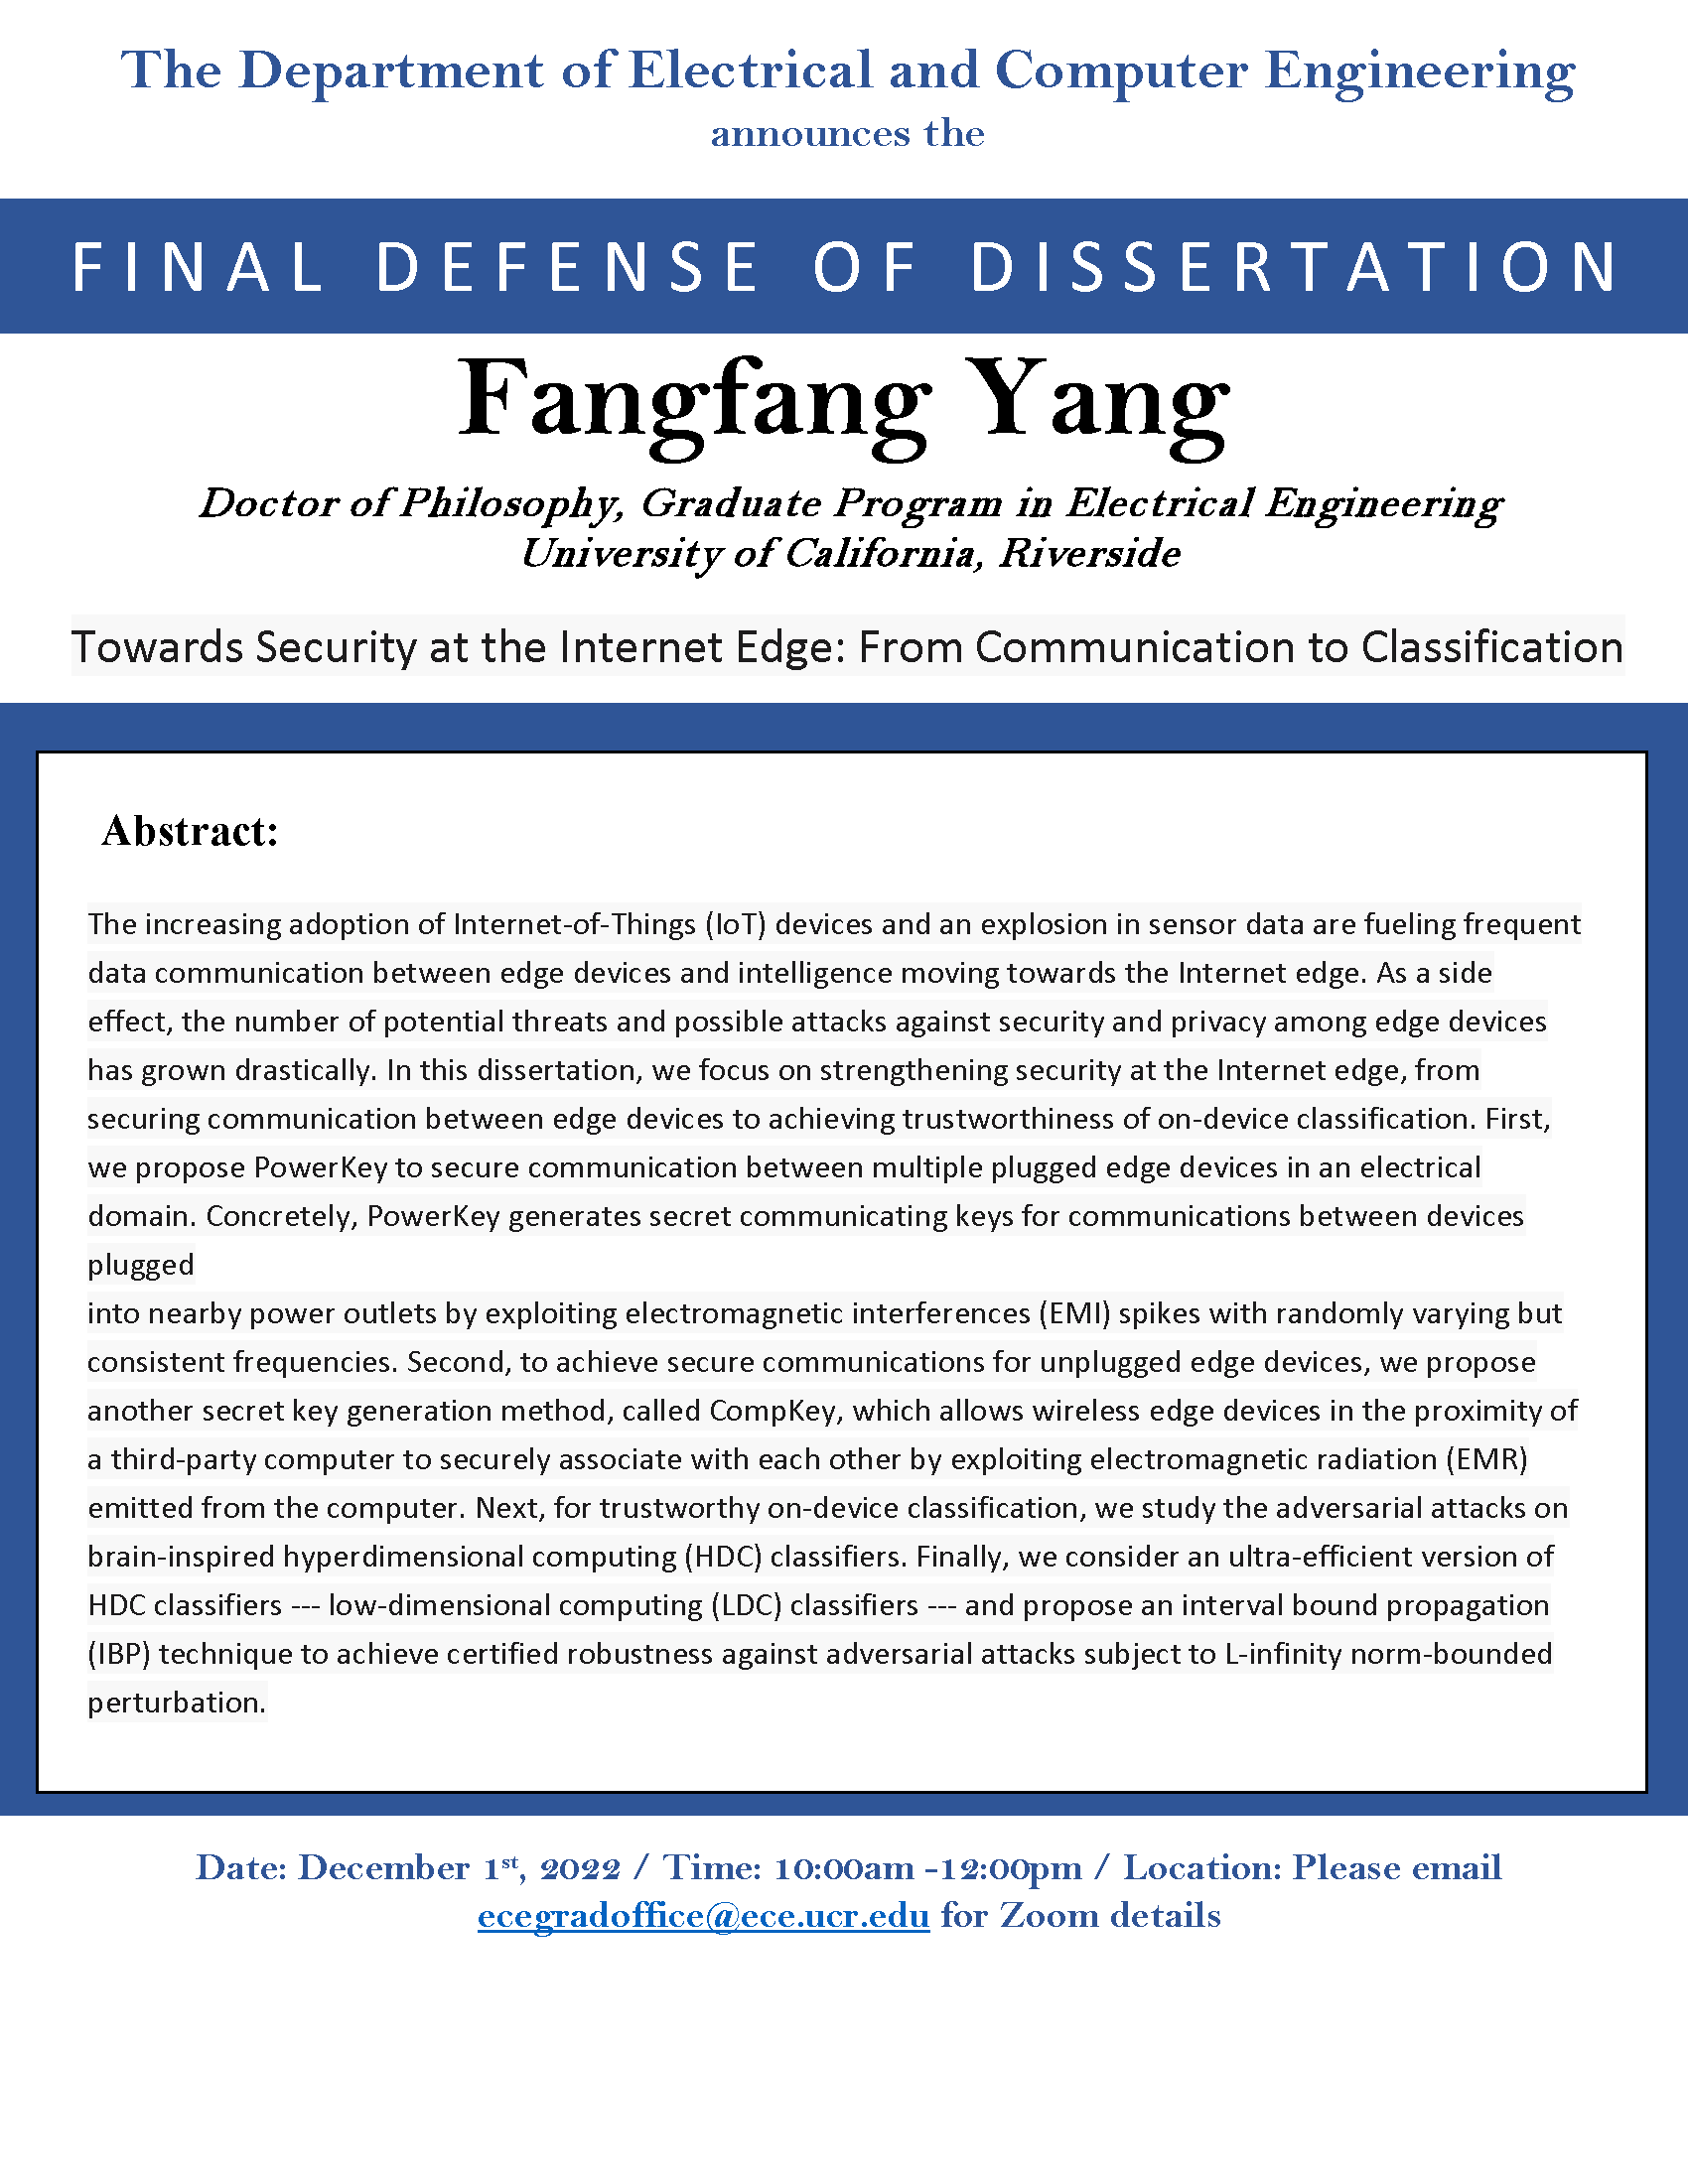 Yang, Fangfang